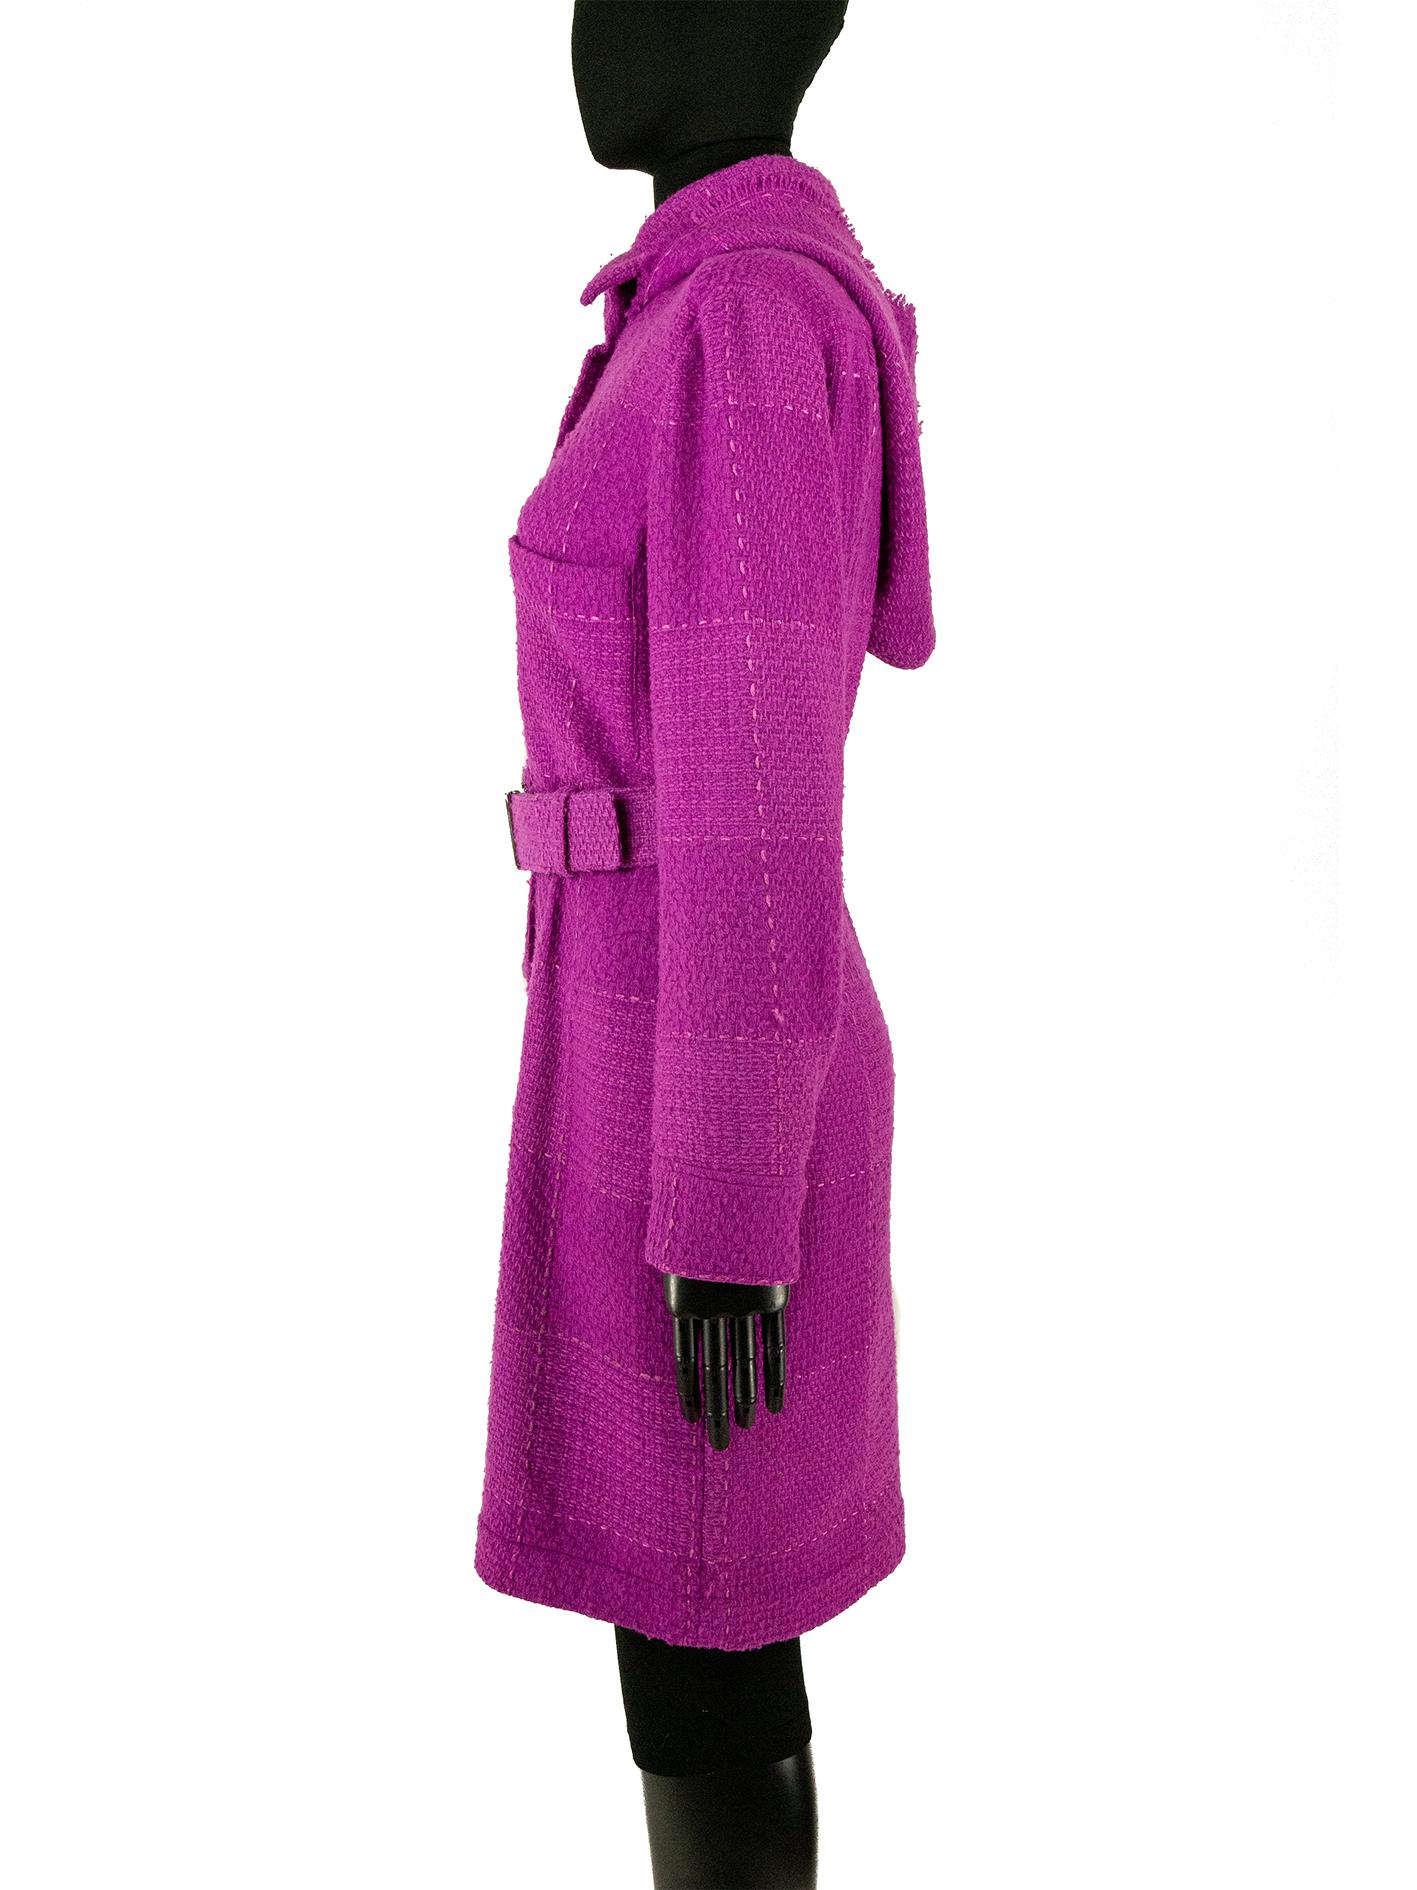 Purple Chanel Autumn 2007 Magenta Tweed Coat